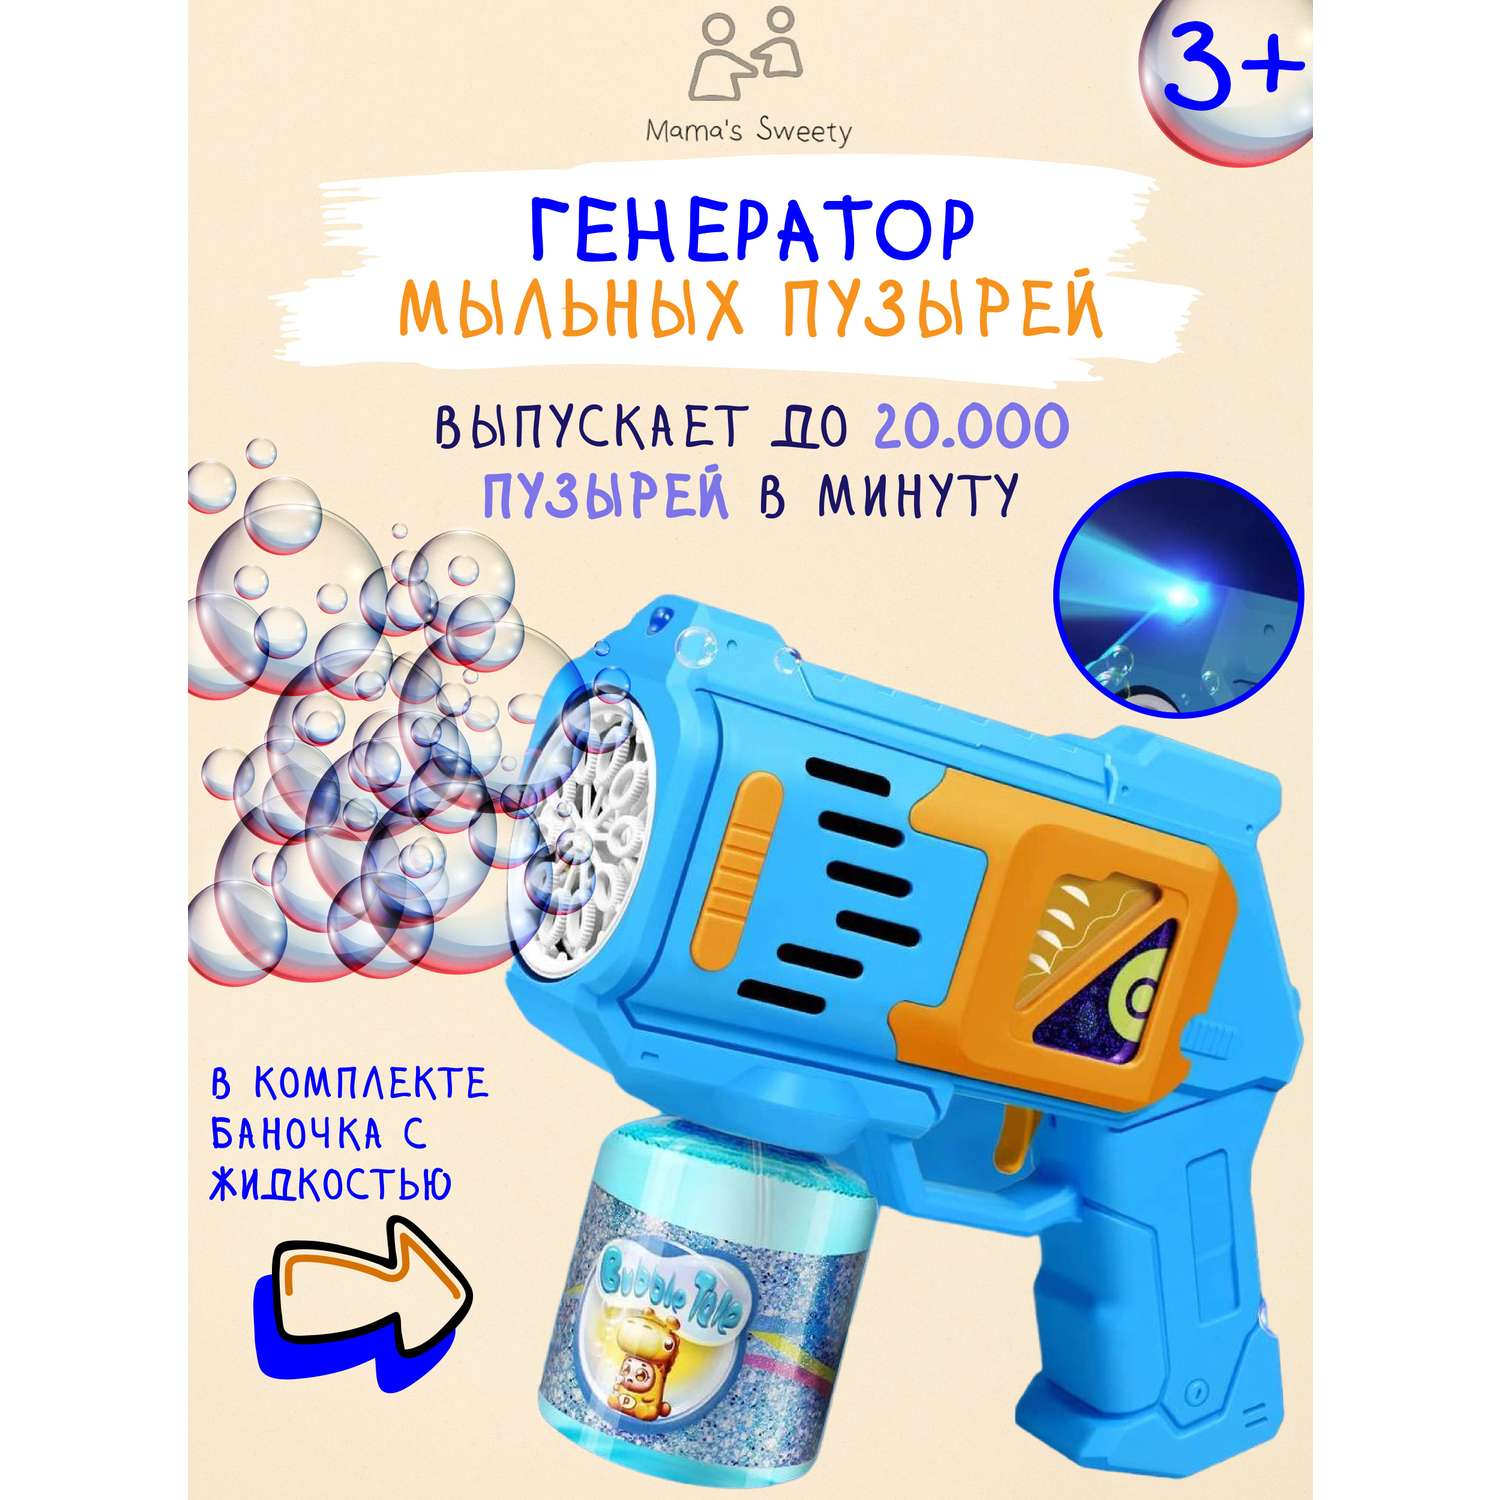 Пистолет Mamas Sweety генератор мыльных пузырей голубой - фото 1